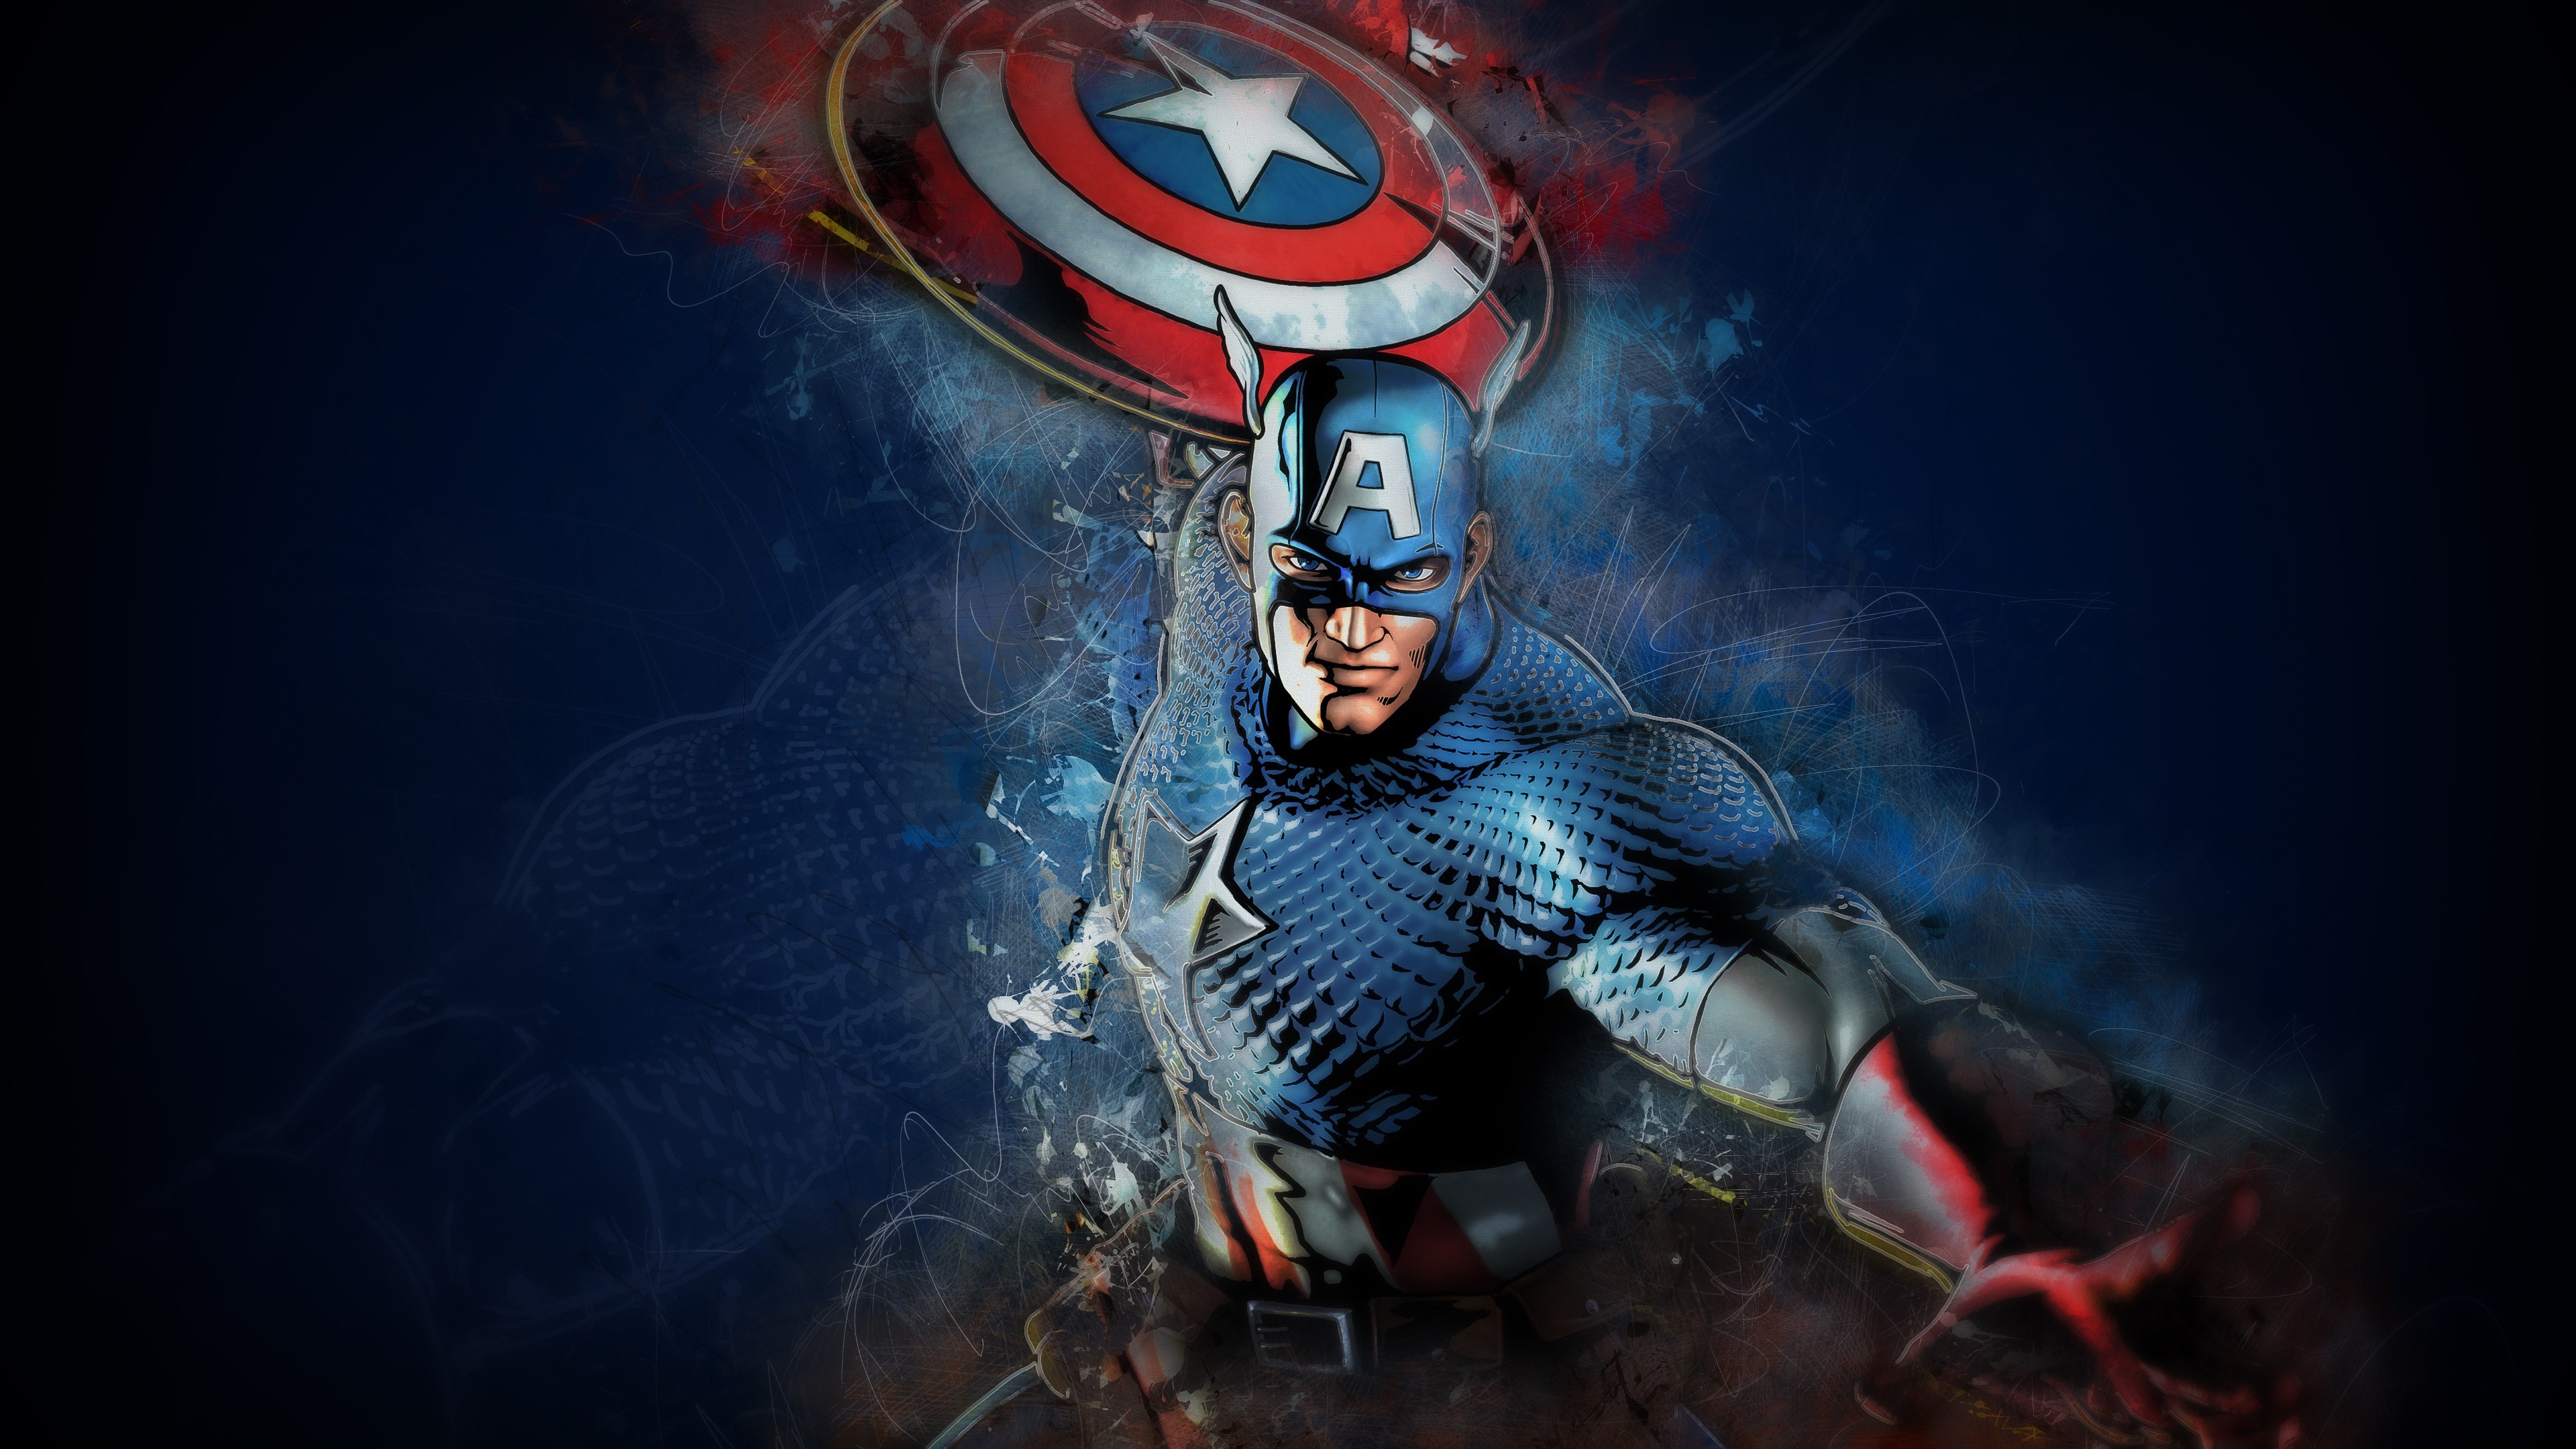 Captain America Artwork 4K Wallpapers | HD Wallpapers